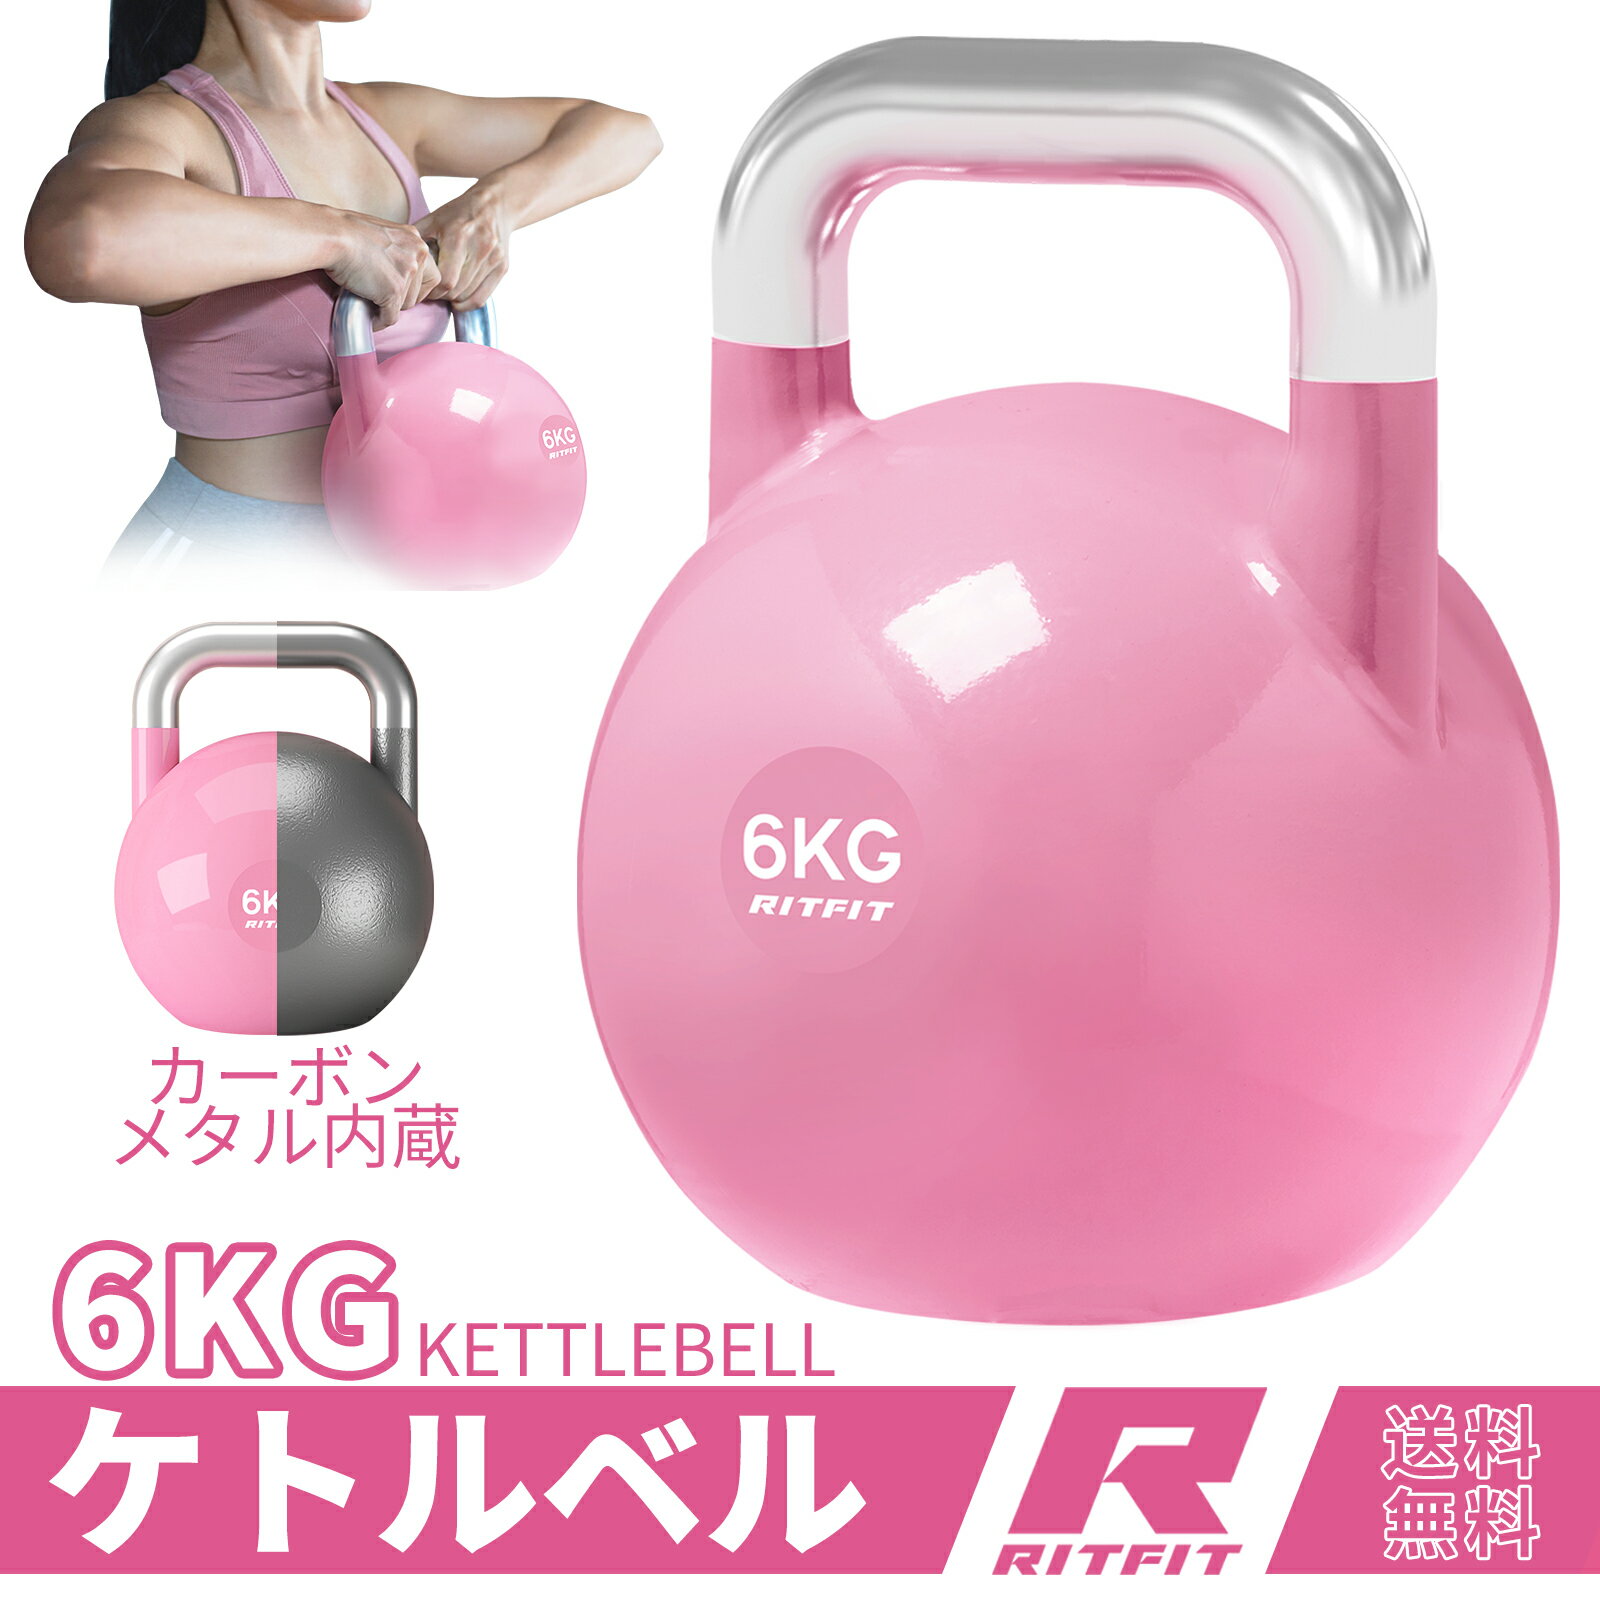 RITFIT ケトルベル ピンク色 6KG カラービニールコーティング ダンベル代わり 頑丈耐用 有酸素運動 背筋 上腕二頭筋 …